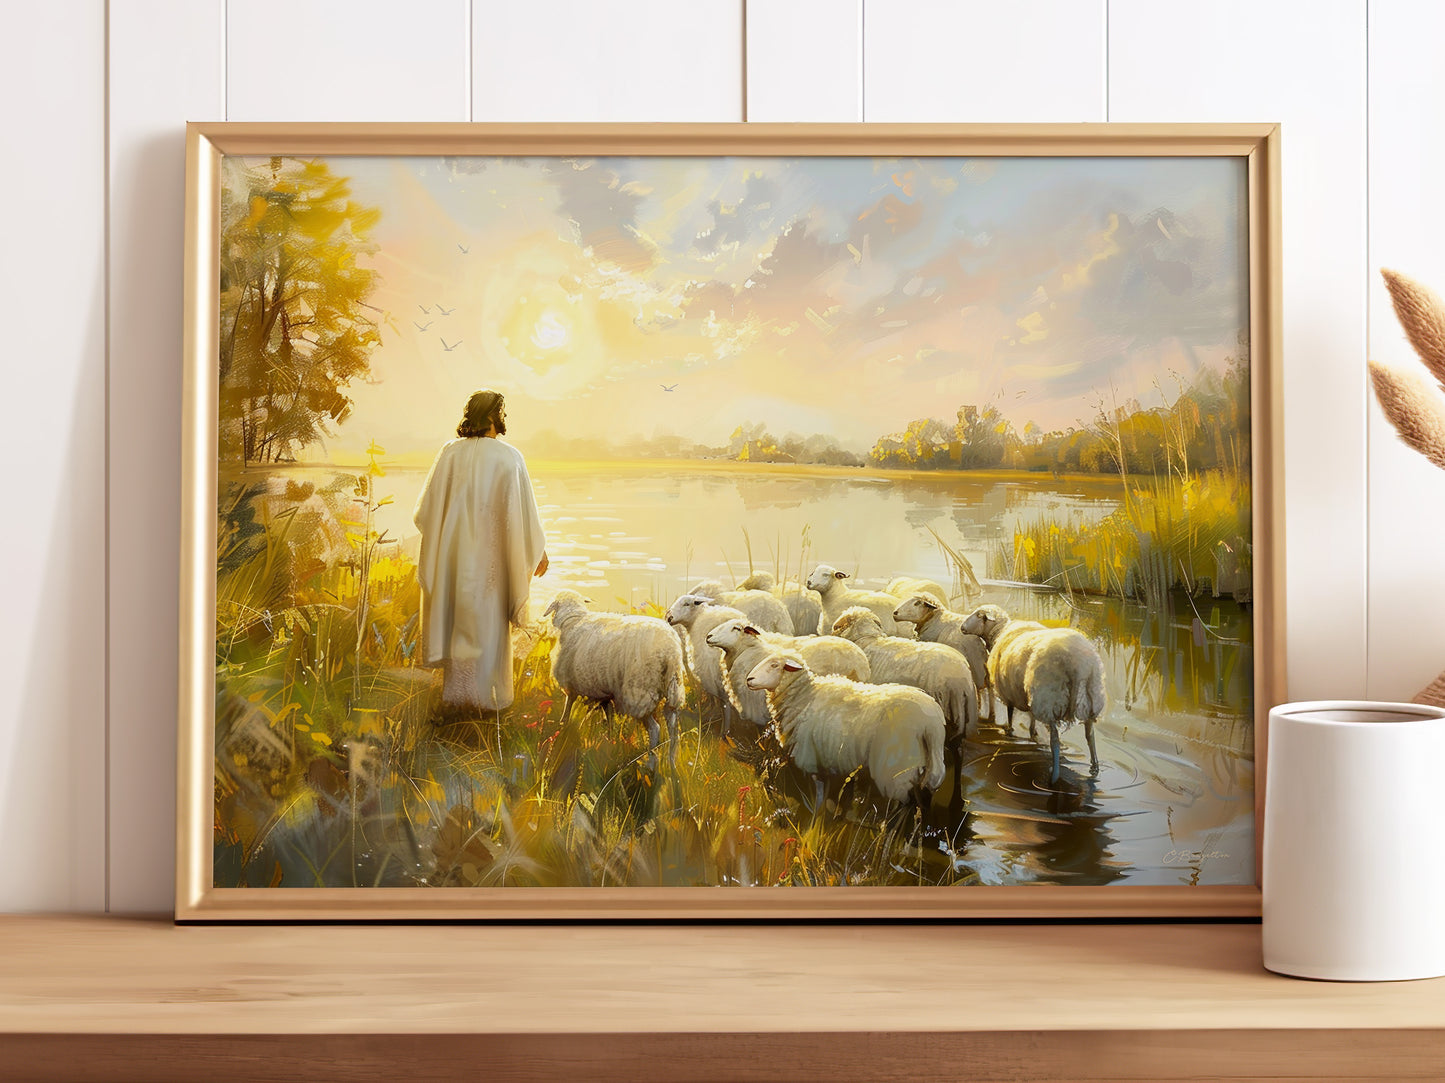 The Lord is My Shepherd (Digital Art Print Download)